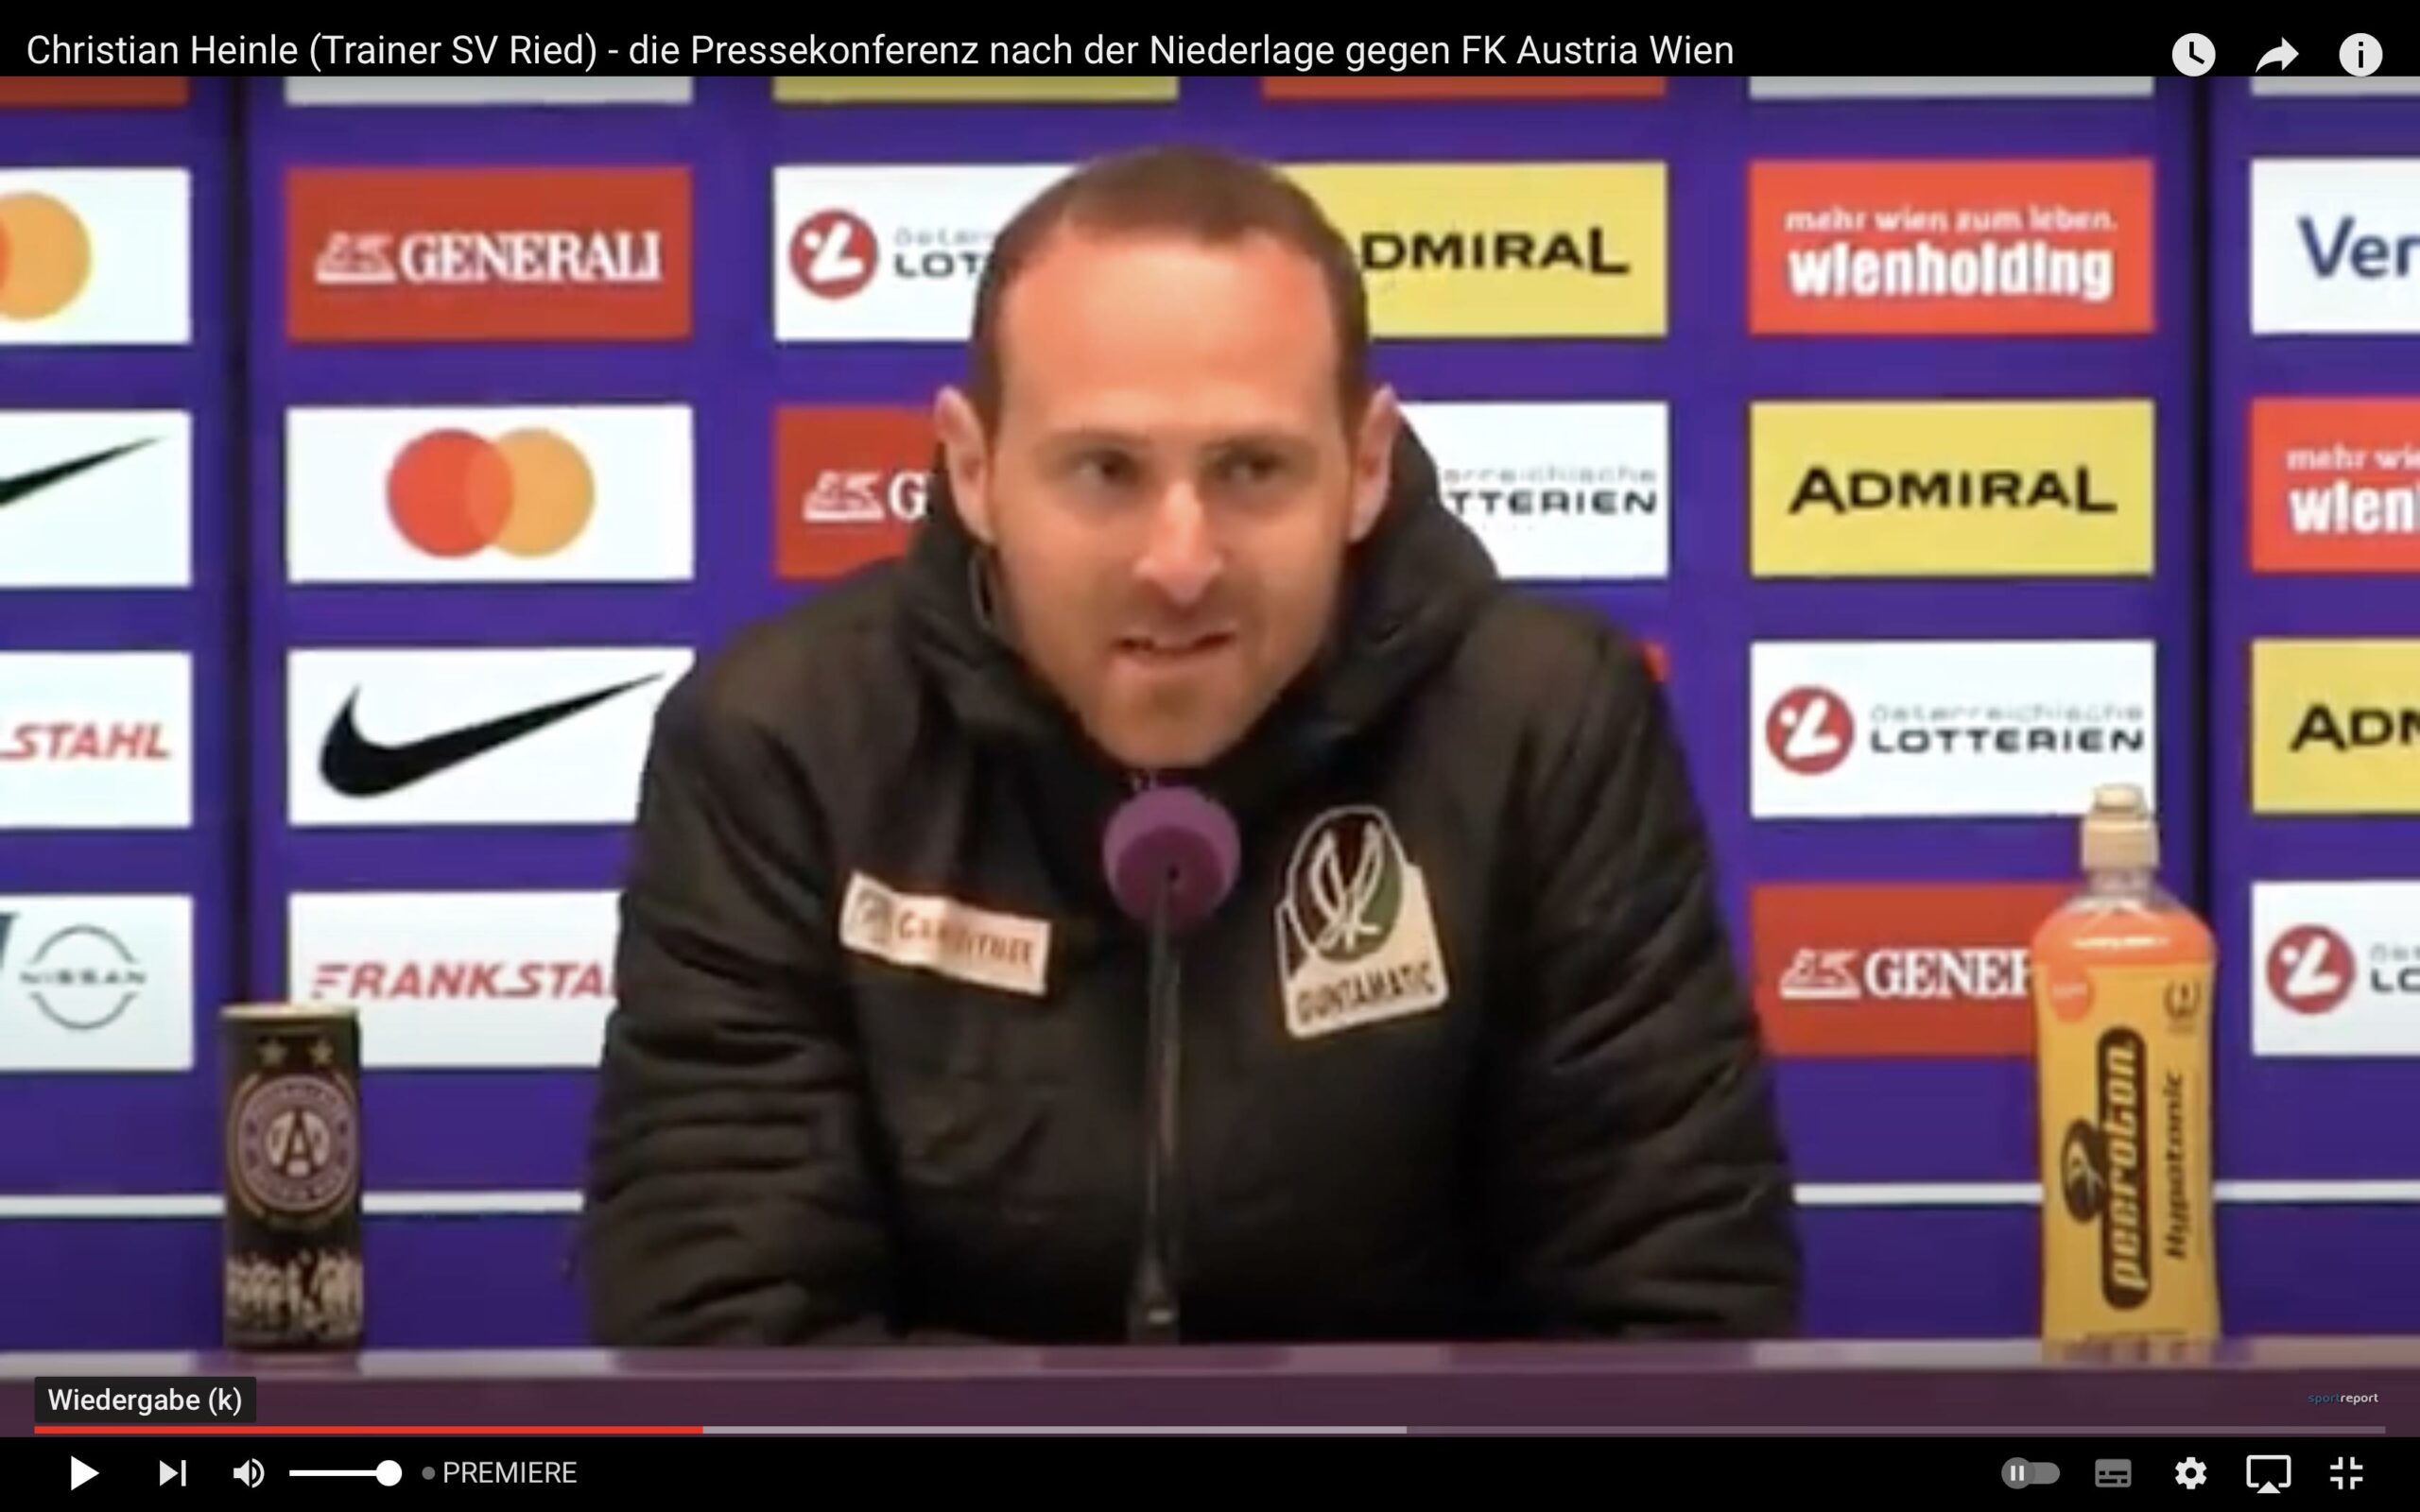 Video: Christian Heinle (Trainer SV Ried) - die Pressekonferenz nach dem Spiel gegen FK Austria Wien